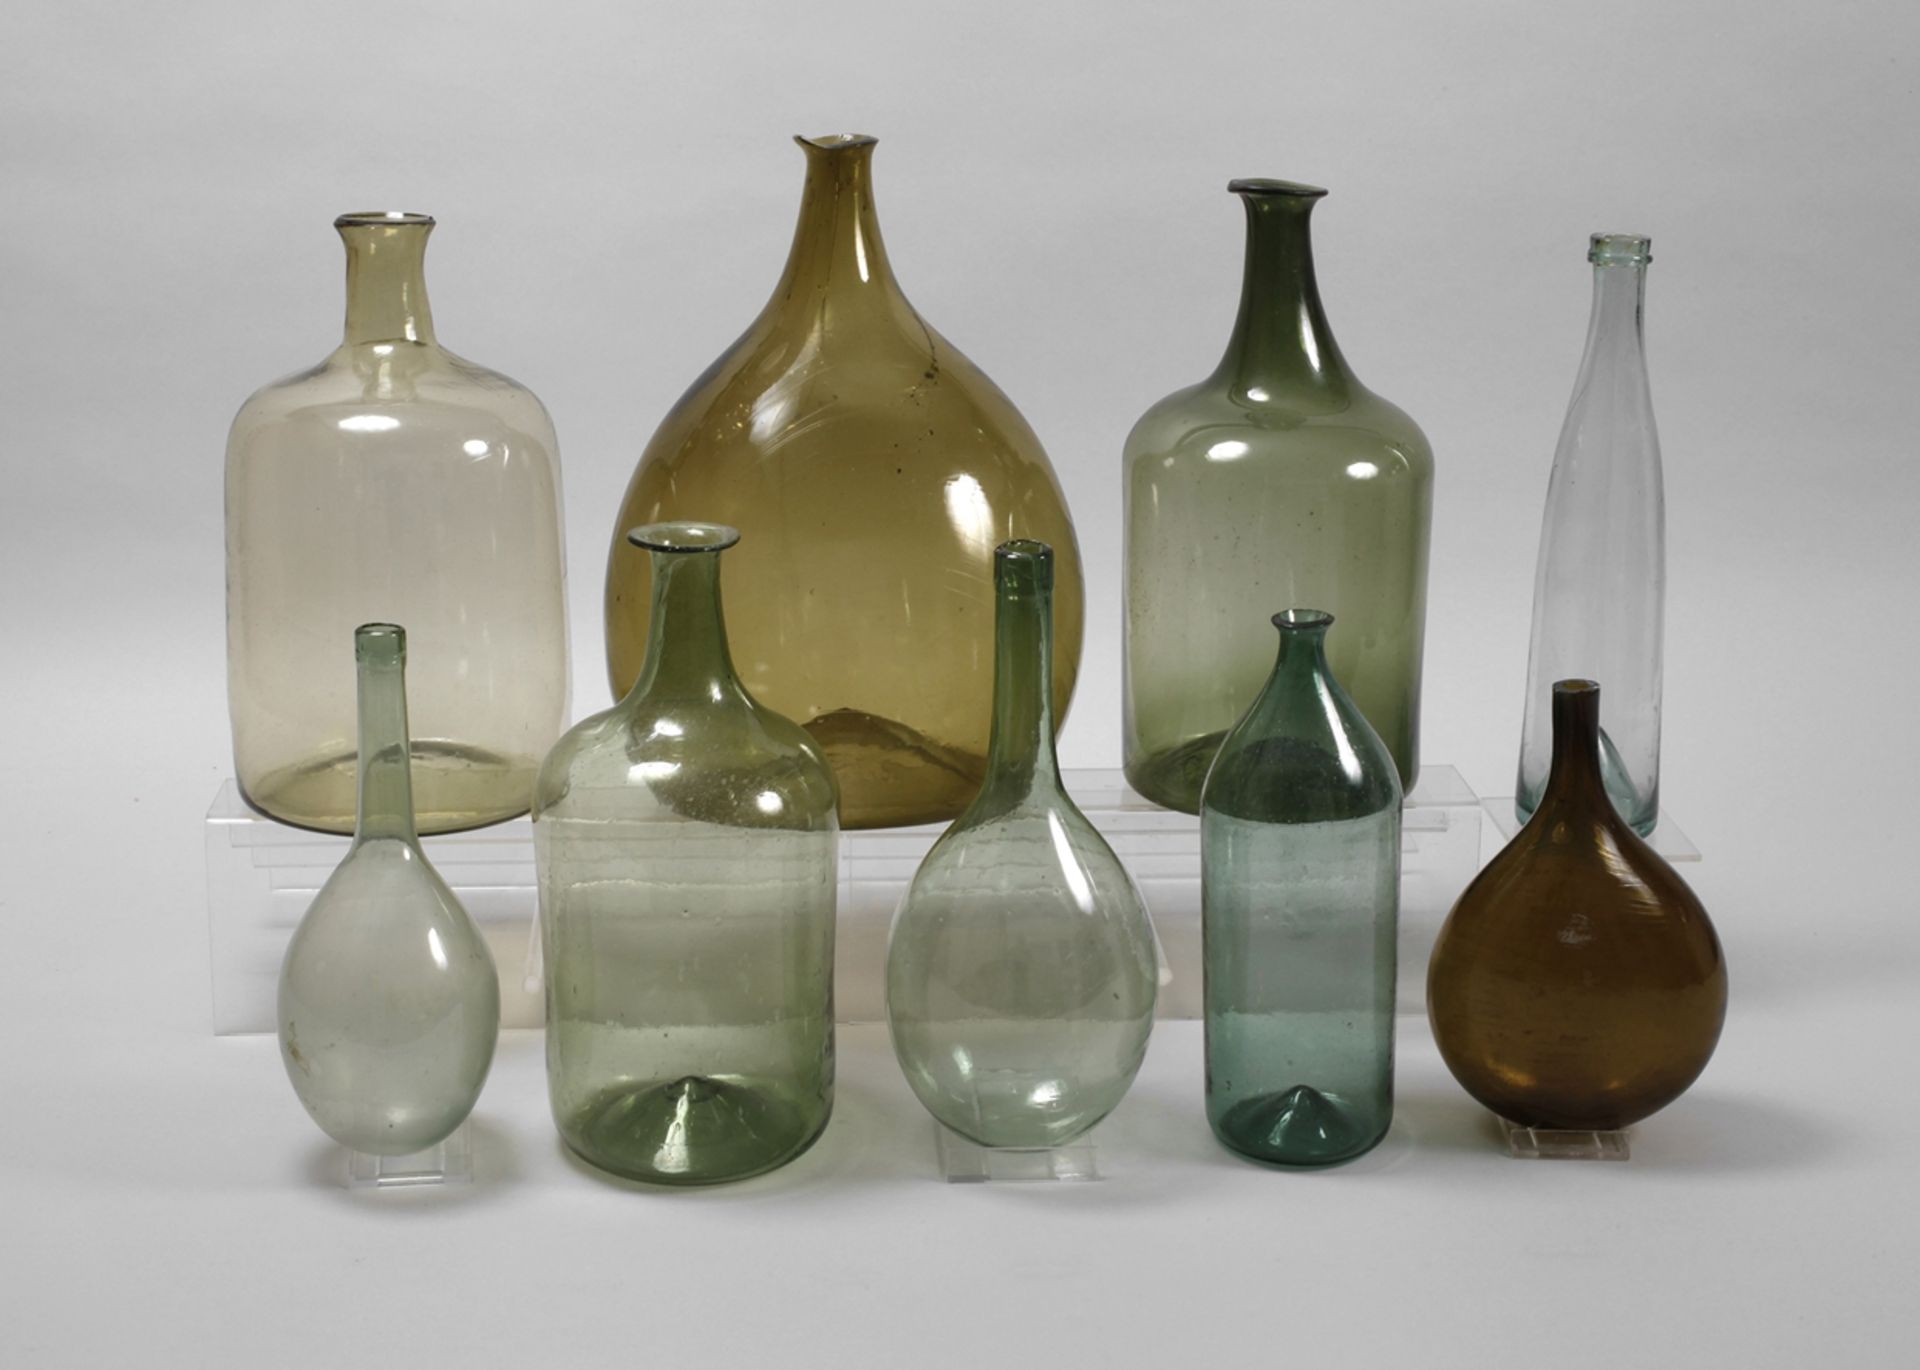 Nine historical glass bottles